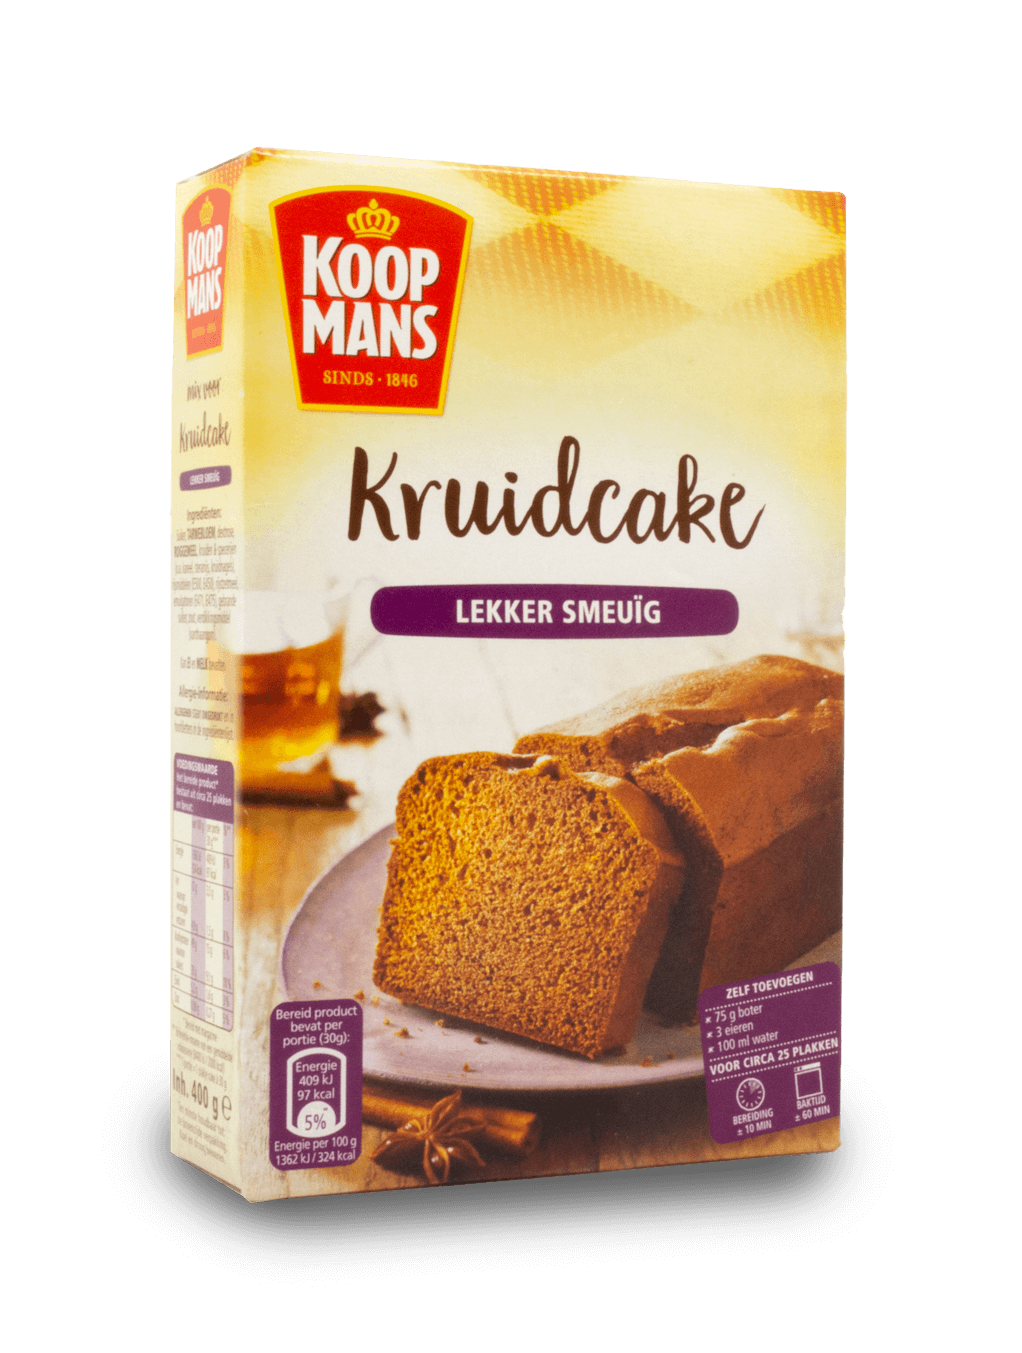 KOOPMANS Old Holland Spice Cake